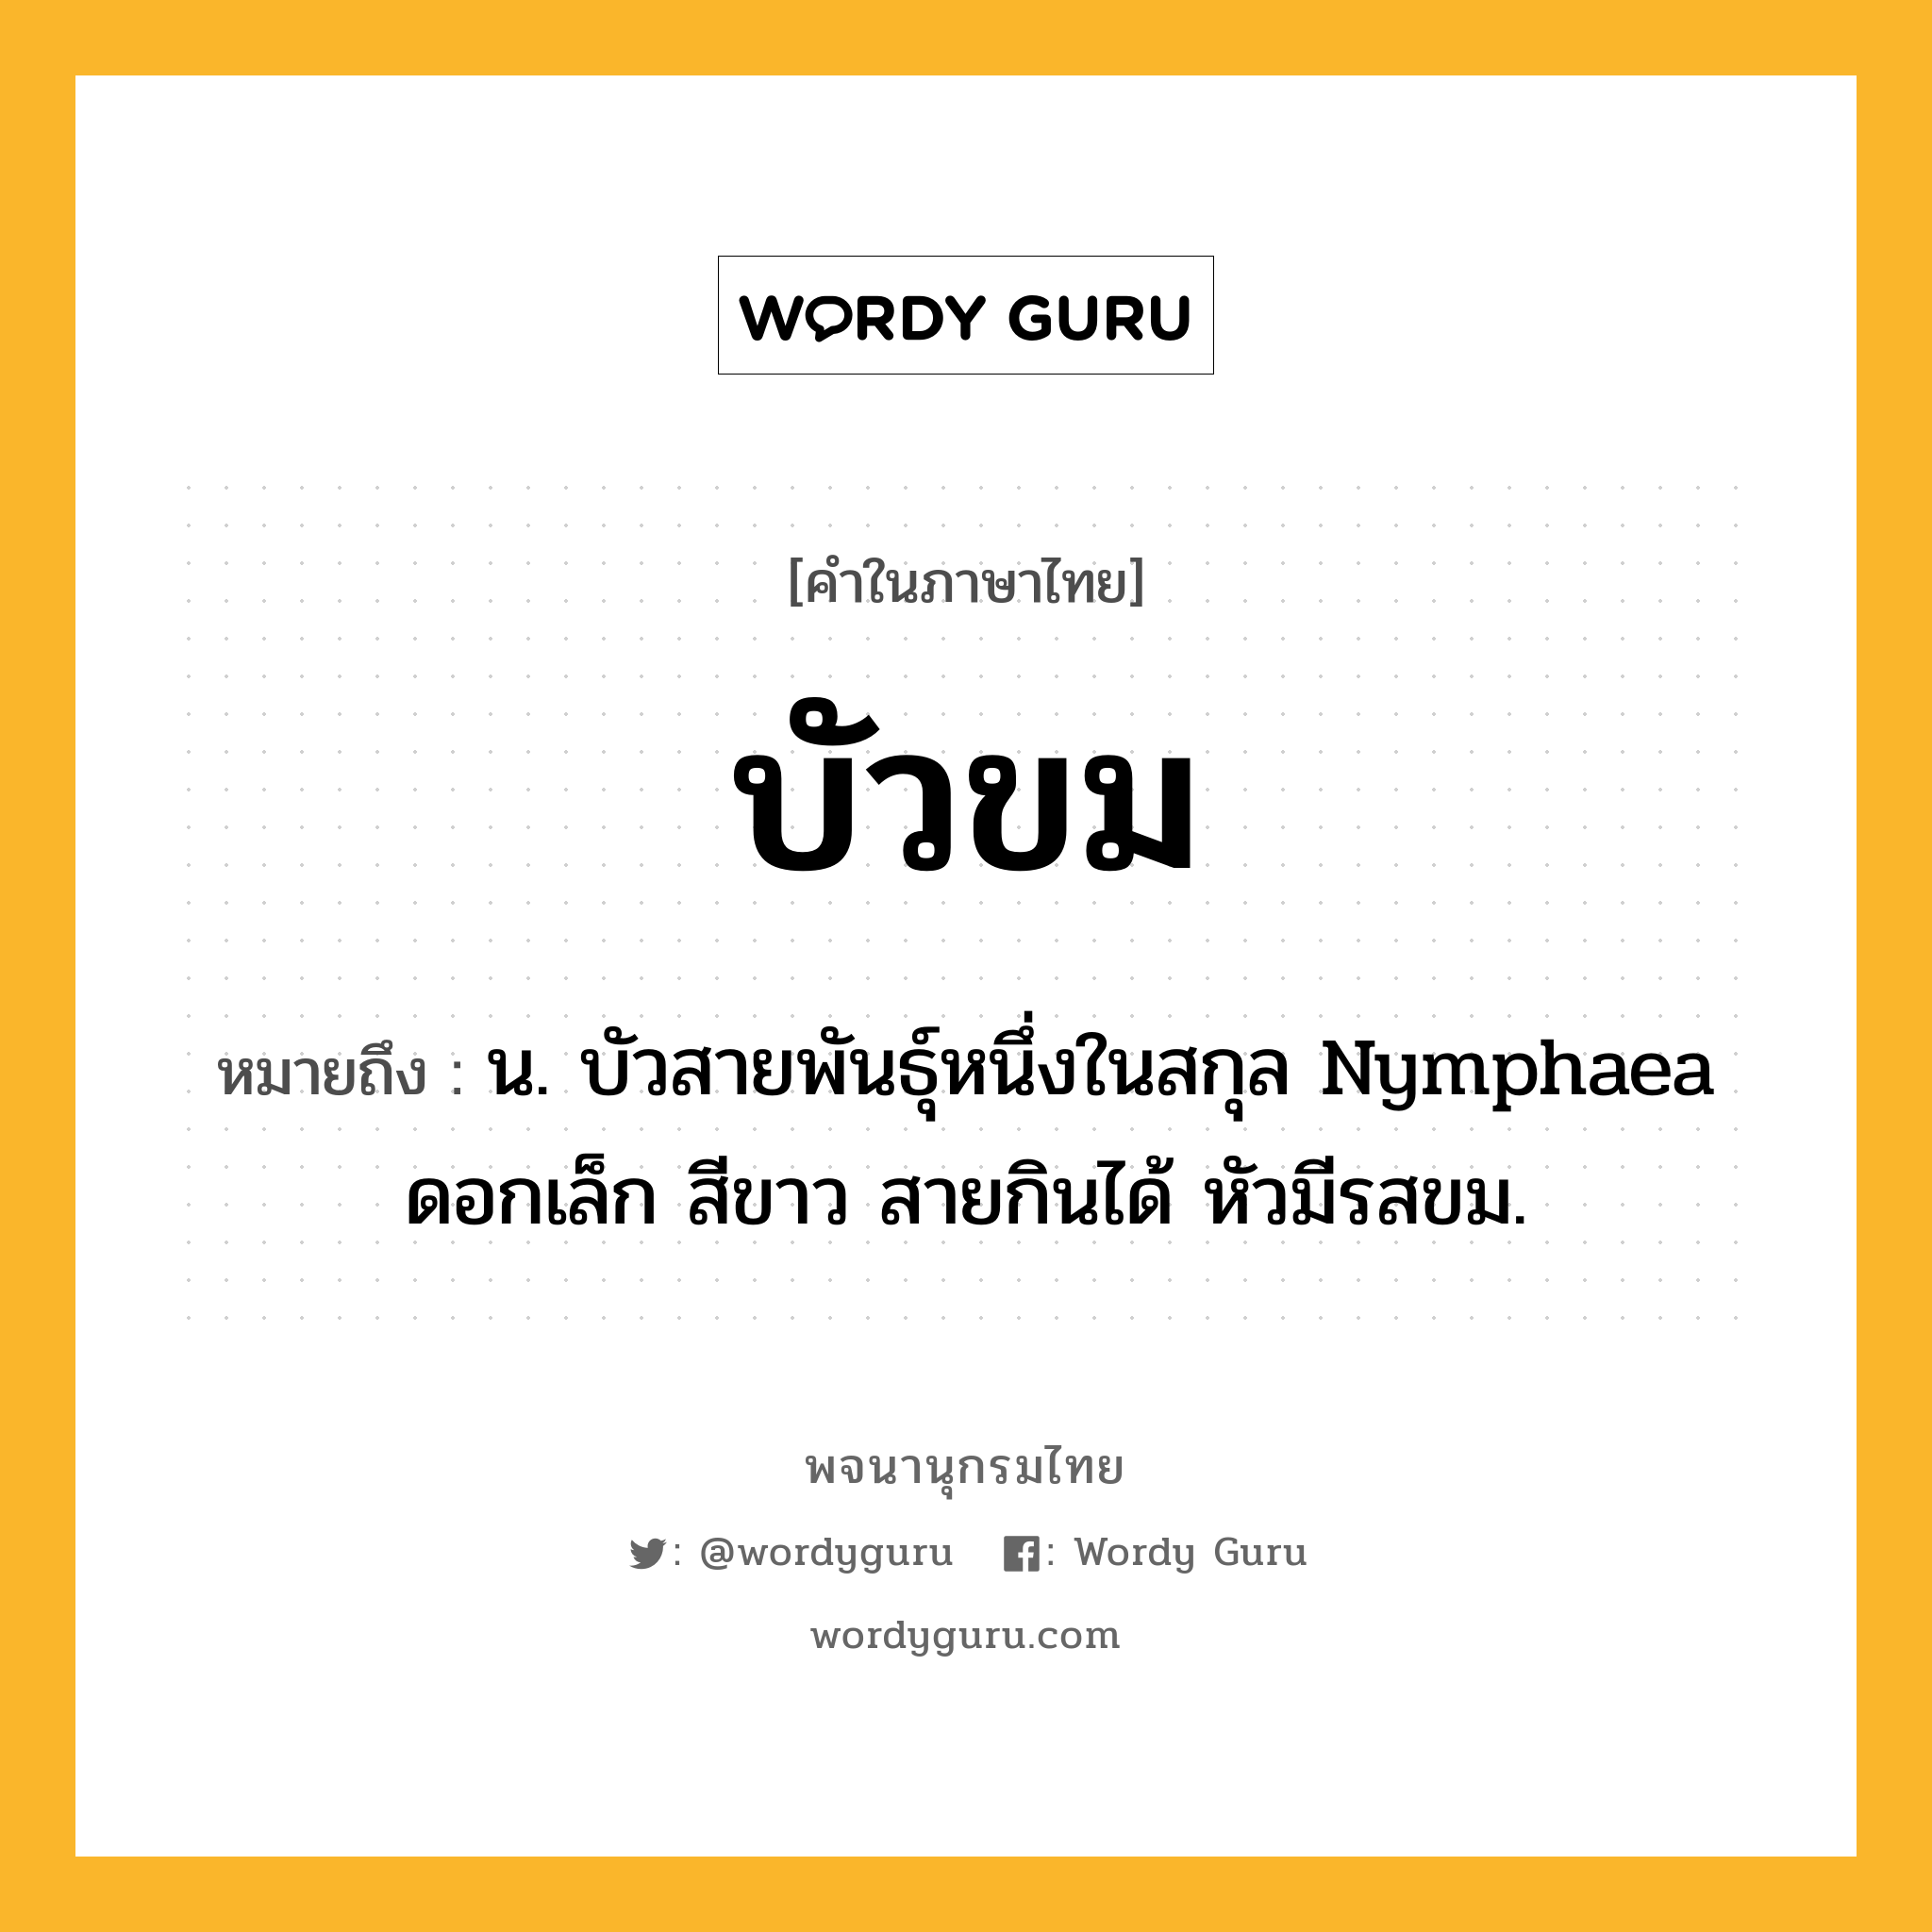 บัวขม ความหมาย หมายถึงอะไร?, คำในภาษาไทย บัวขม หมายถึง น. บัวสายพันธุ์หนึ่งในสกุล Nymphaea ดอกเล็ก สีขาว สายกินได้ หัวมีรสขม.